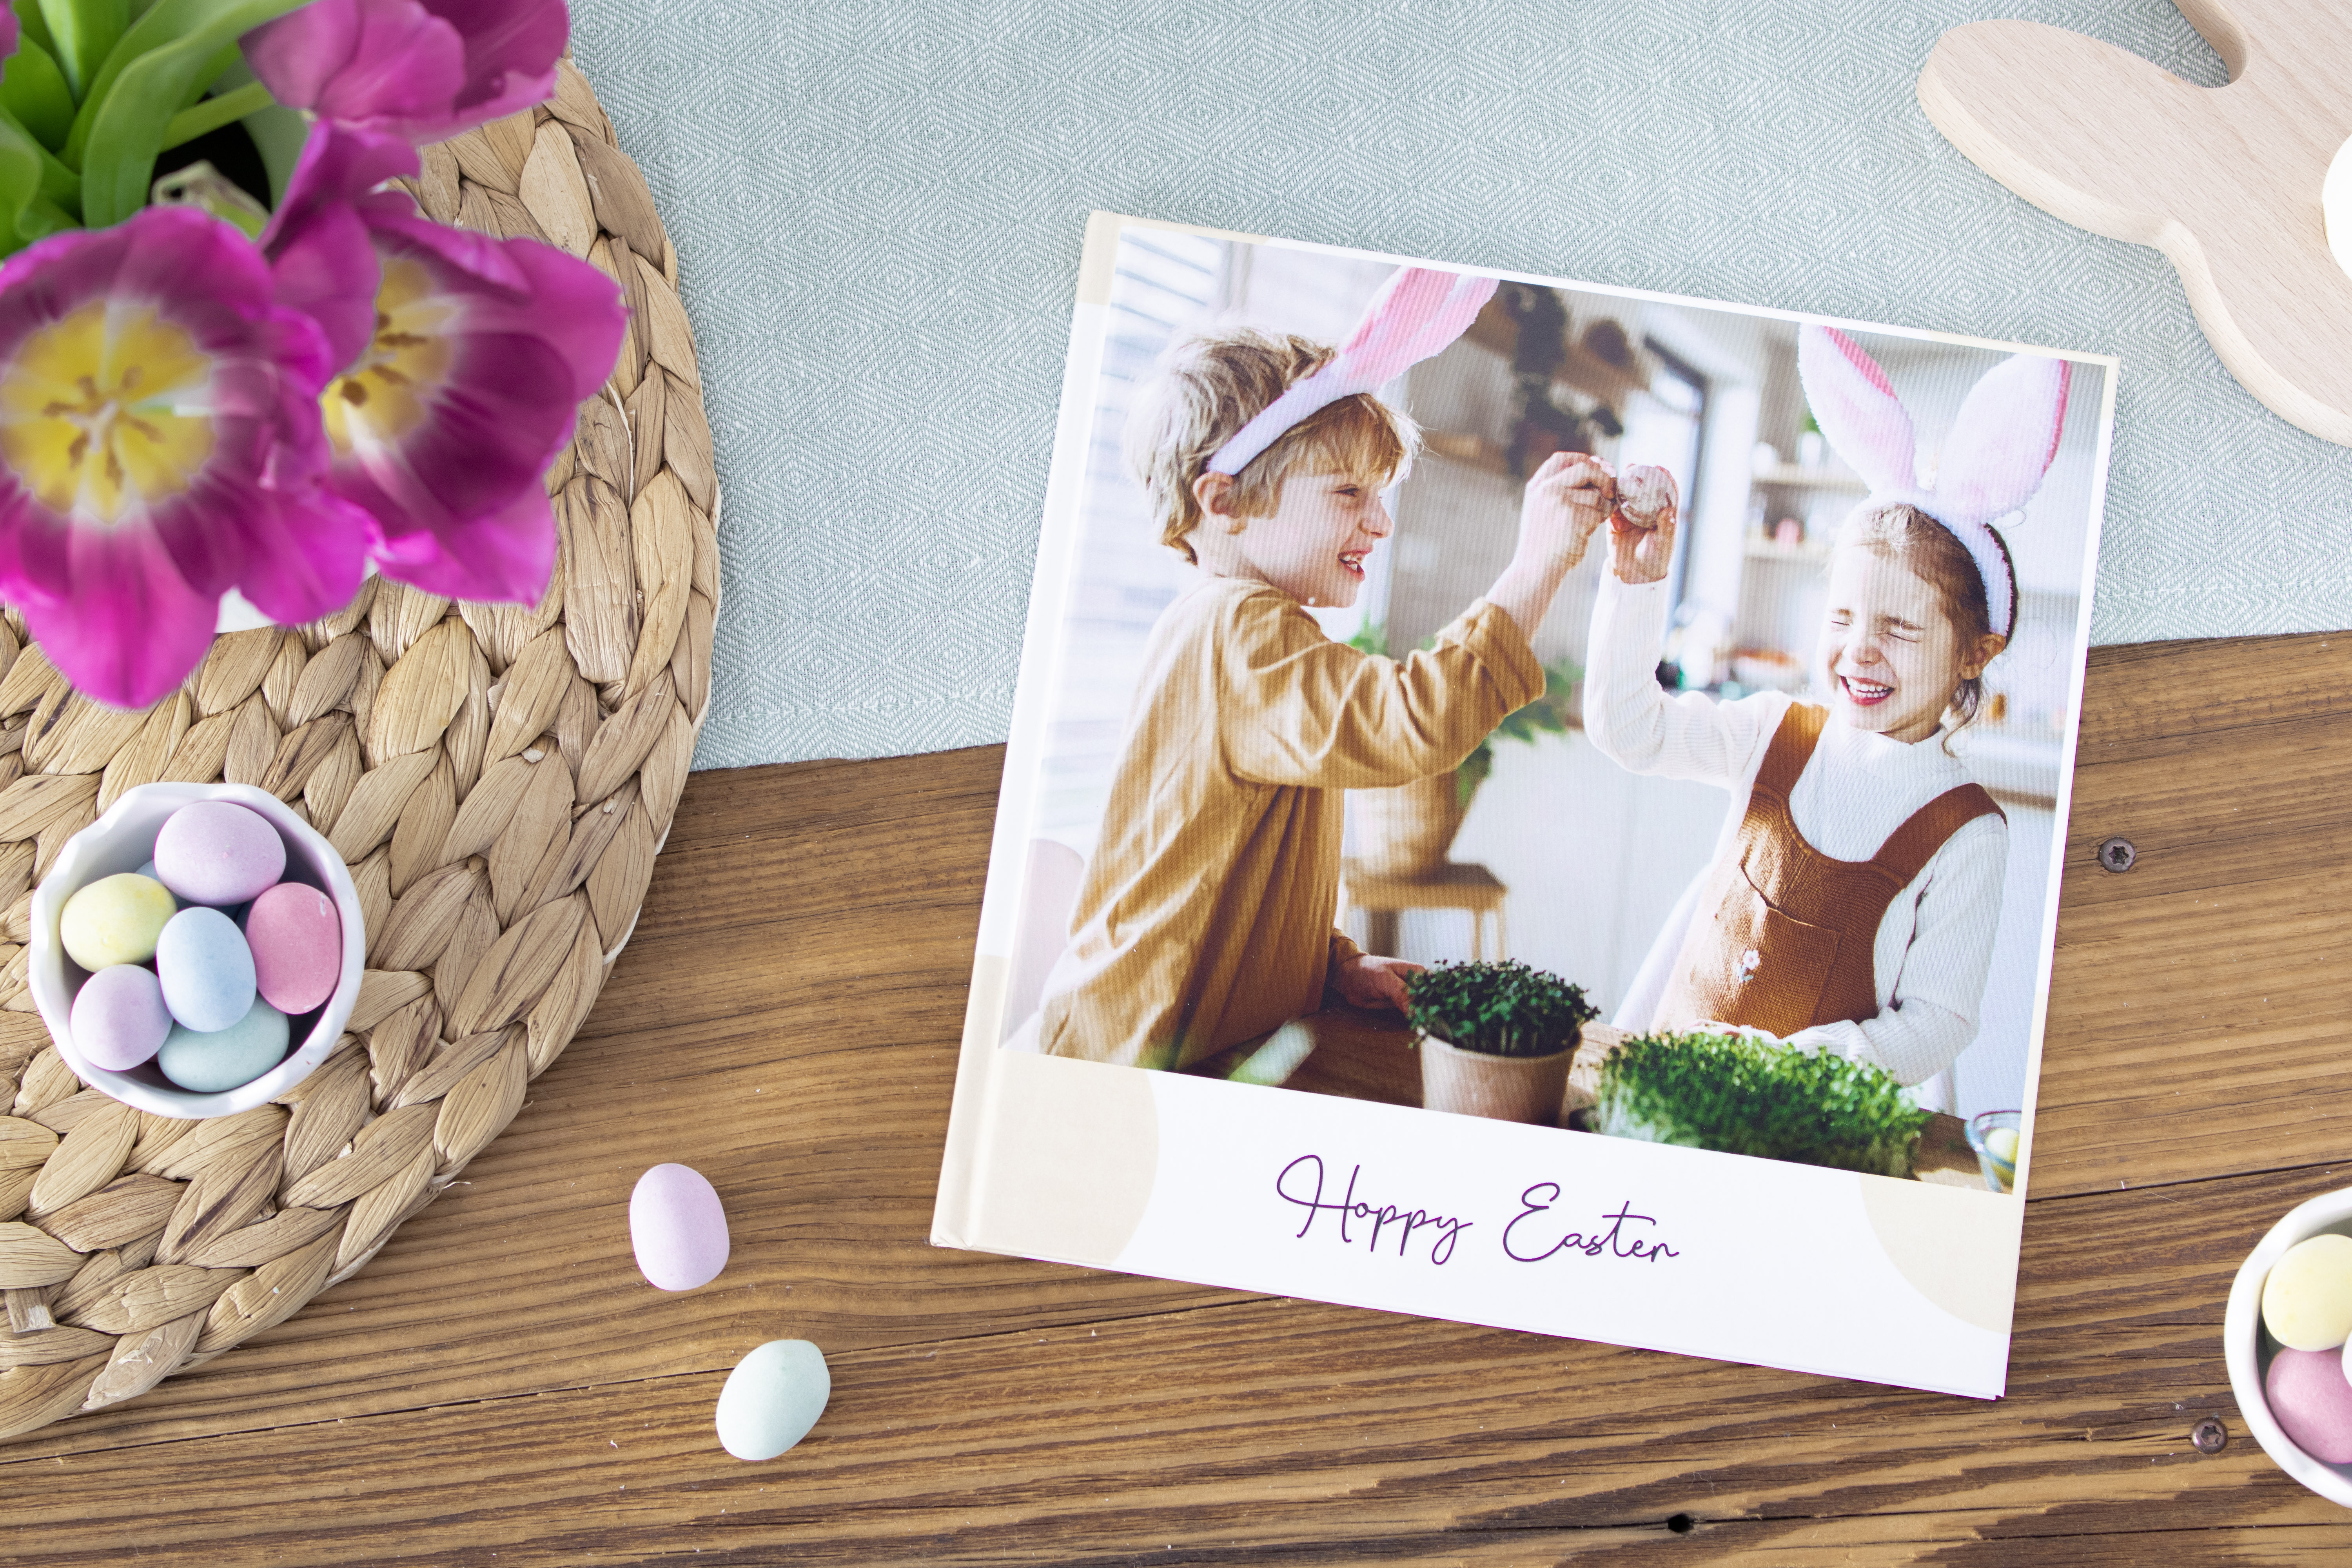 Ostertraditionen: Halte deine Ostertraditionen fest, indem du ein einzigartiges Fotobuch deiner liebsten Ostermomente gestaltest.